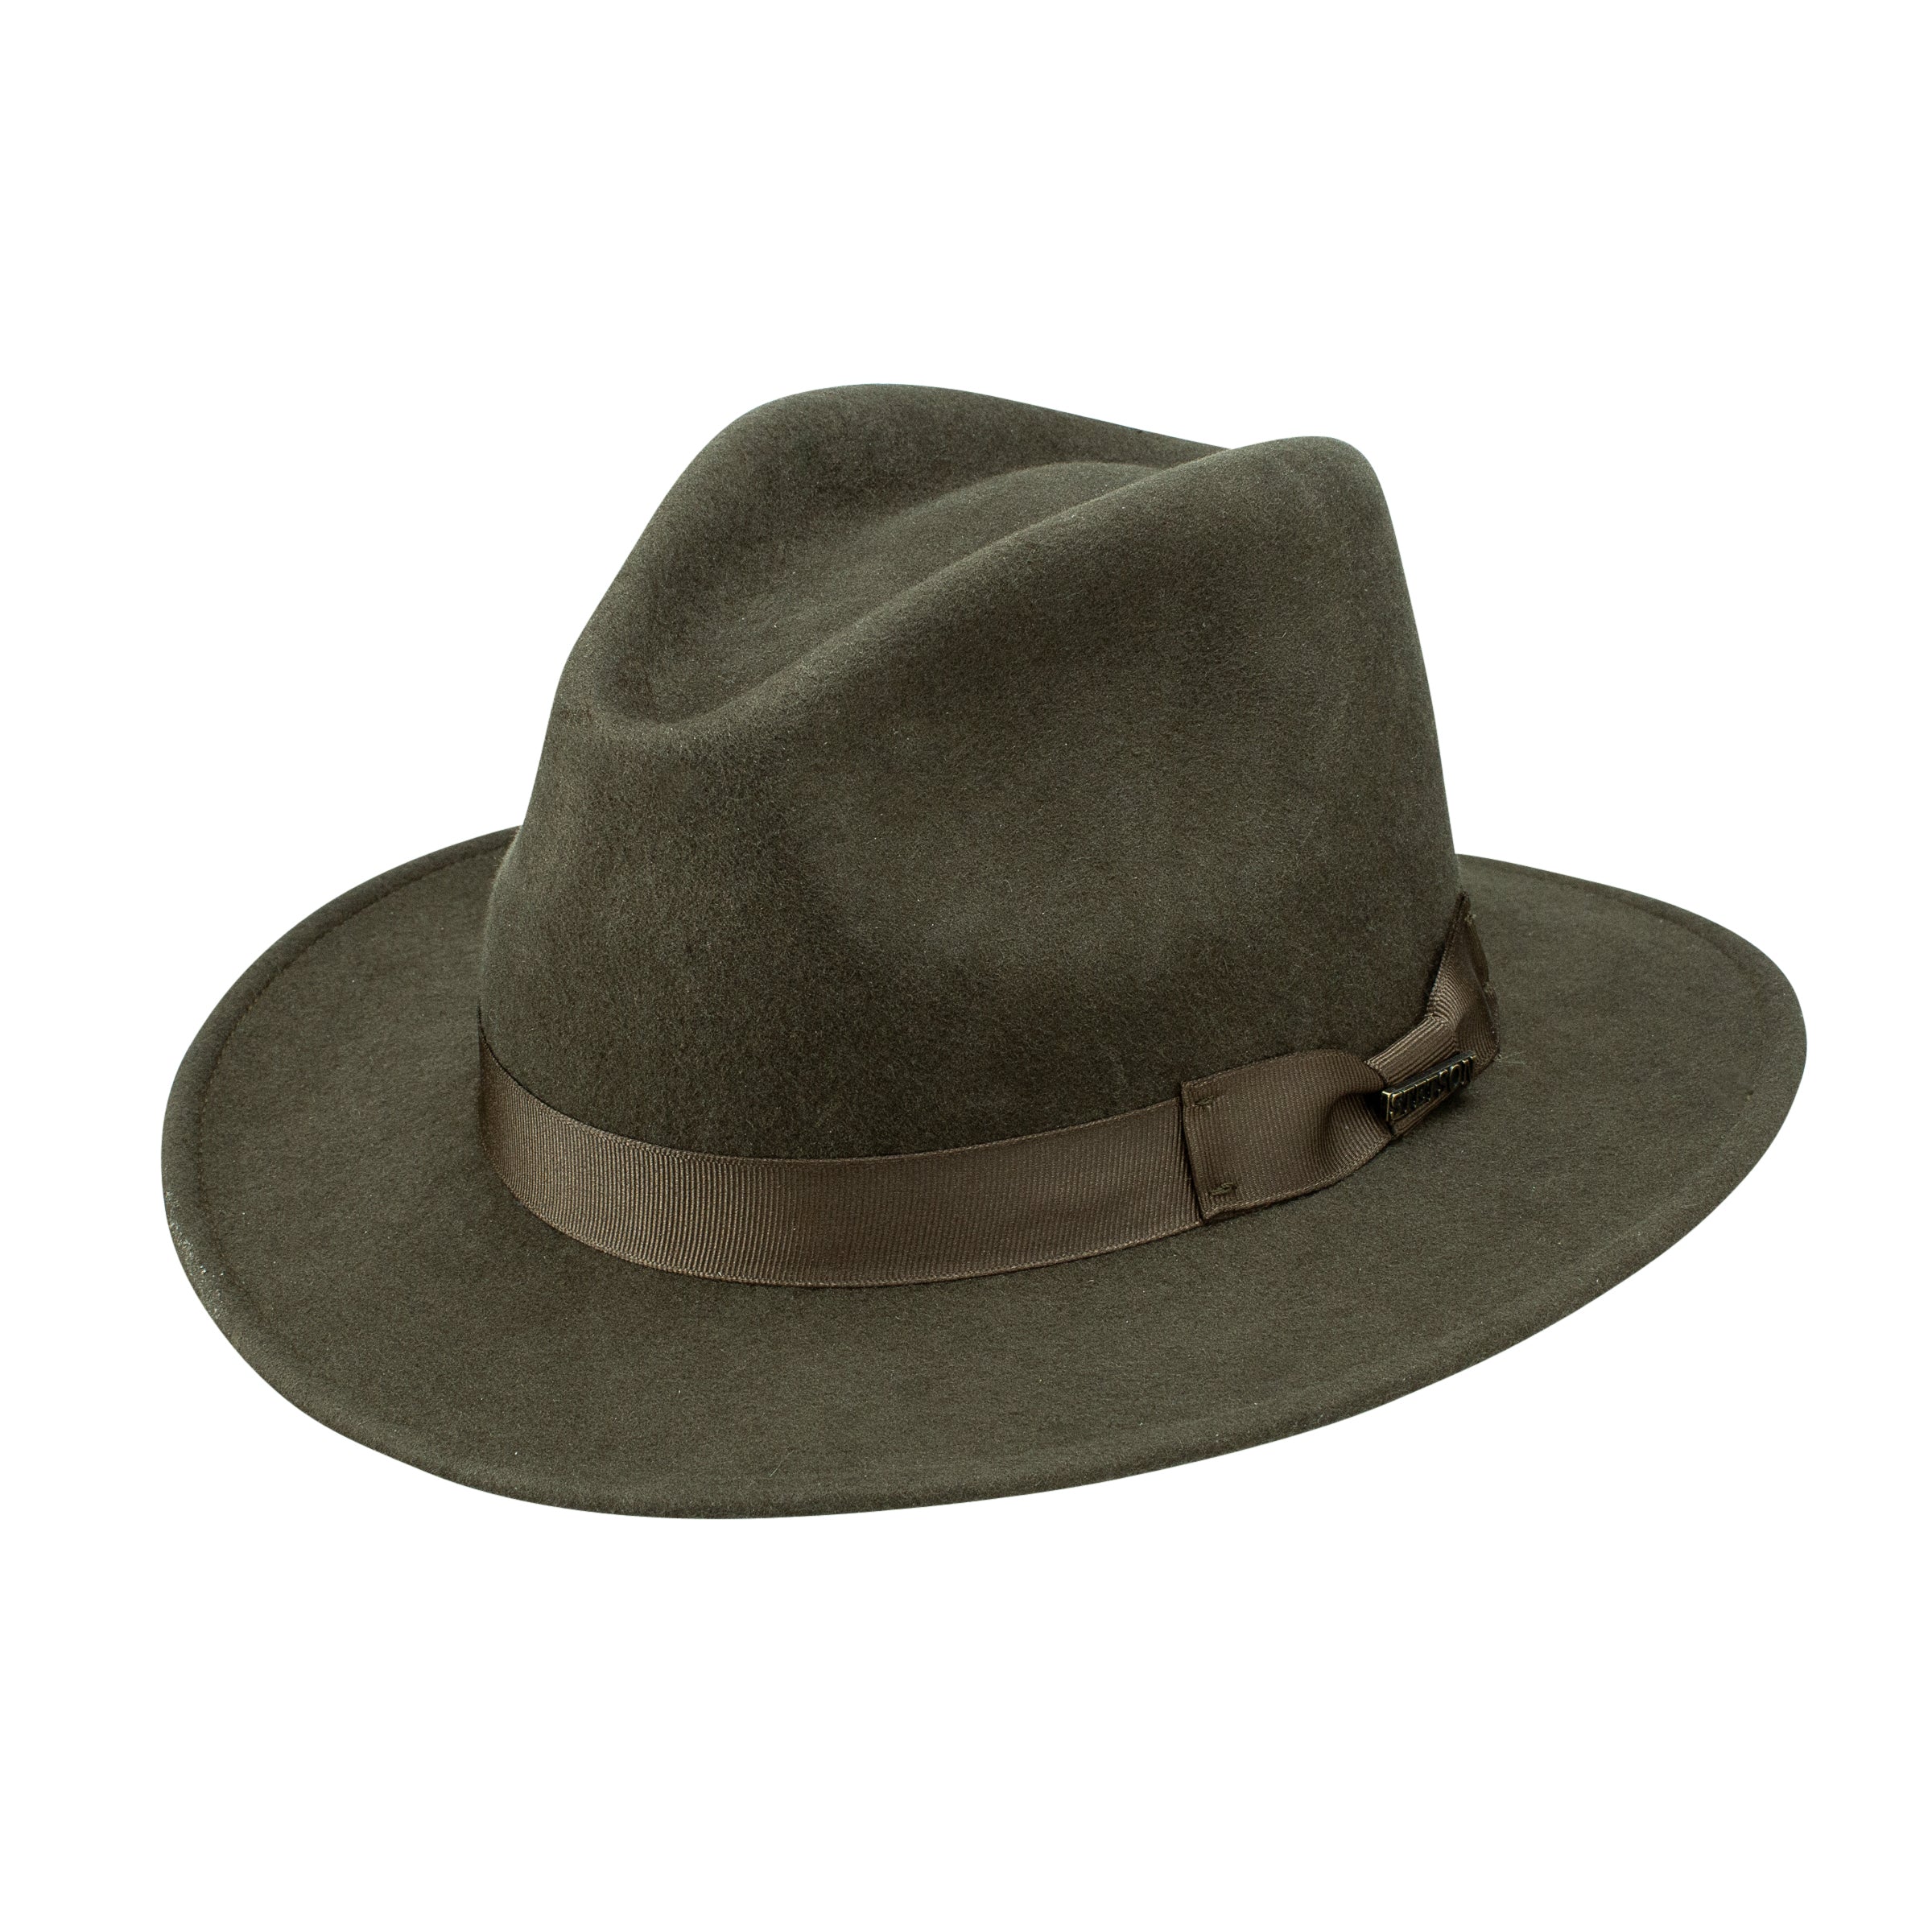 Stetson Wool Felt Markham Pinch Front Cowboy Hat in Sage